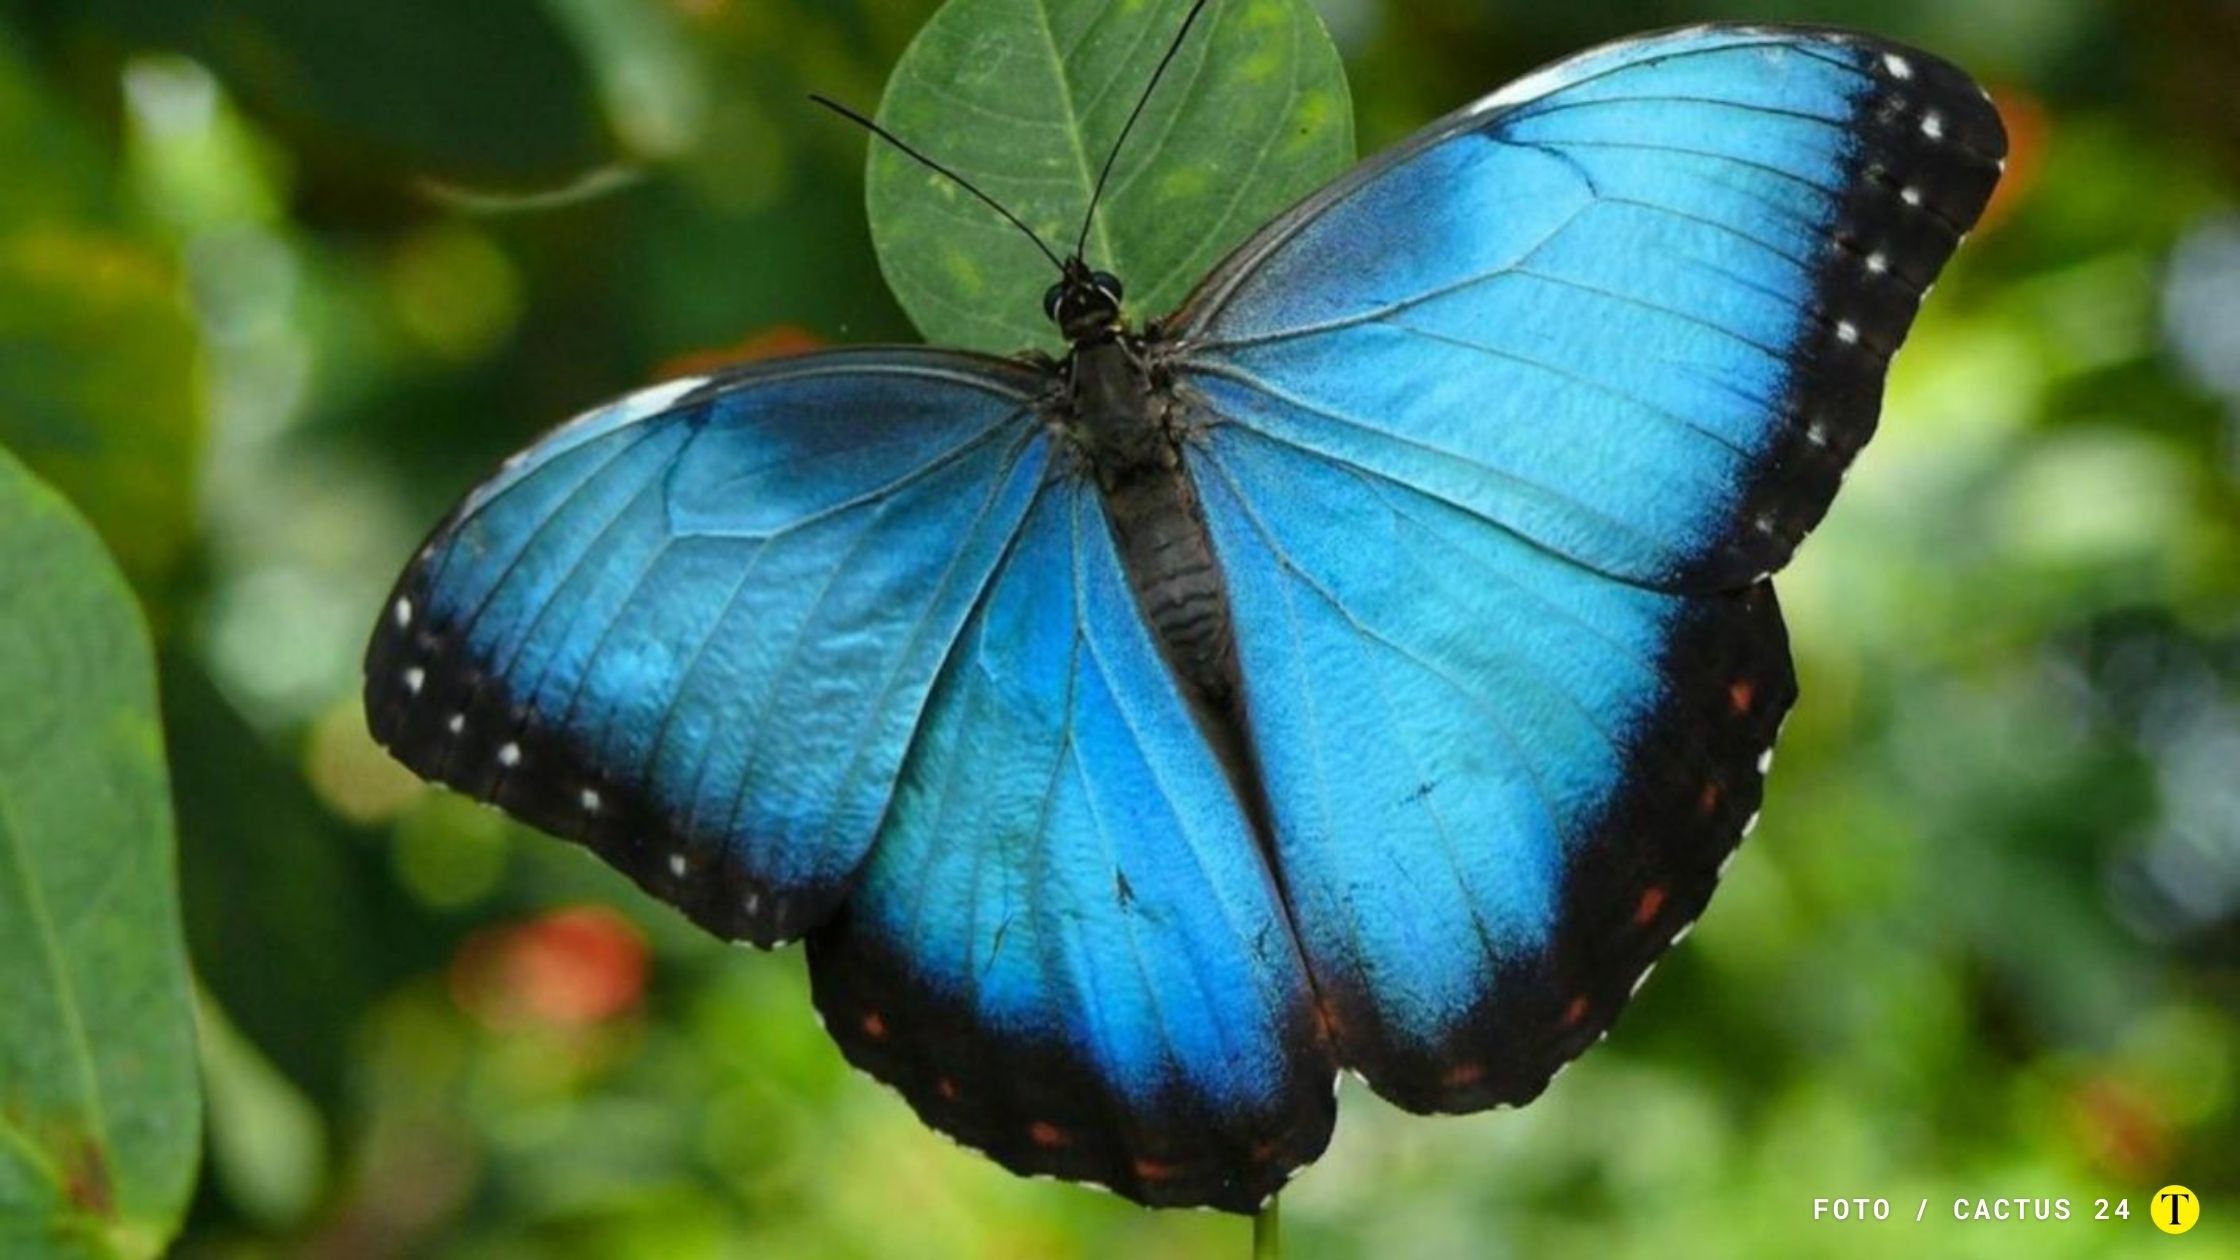 Algunas mariposas están en riesgo de extinción. La subespecie Morpho Helenor Cramer, la mariposa nacional venezolana podría ser una. FOTO: CACTUS 24